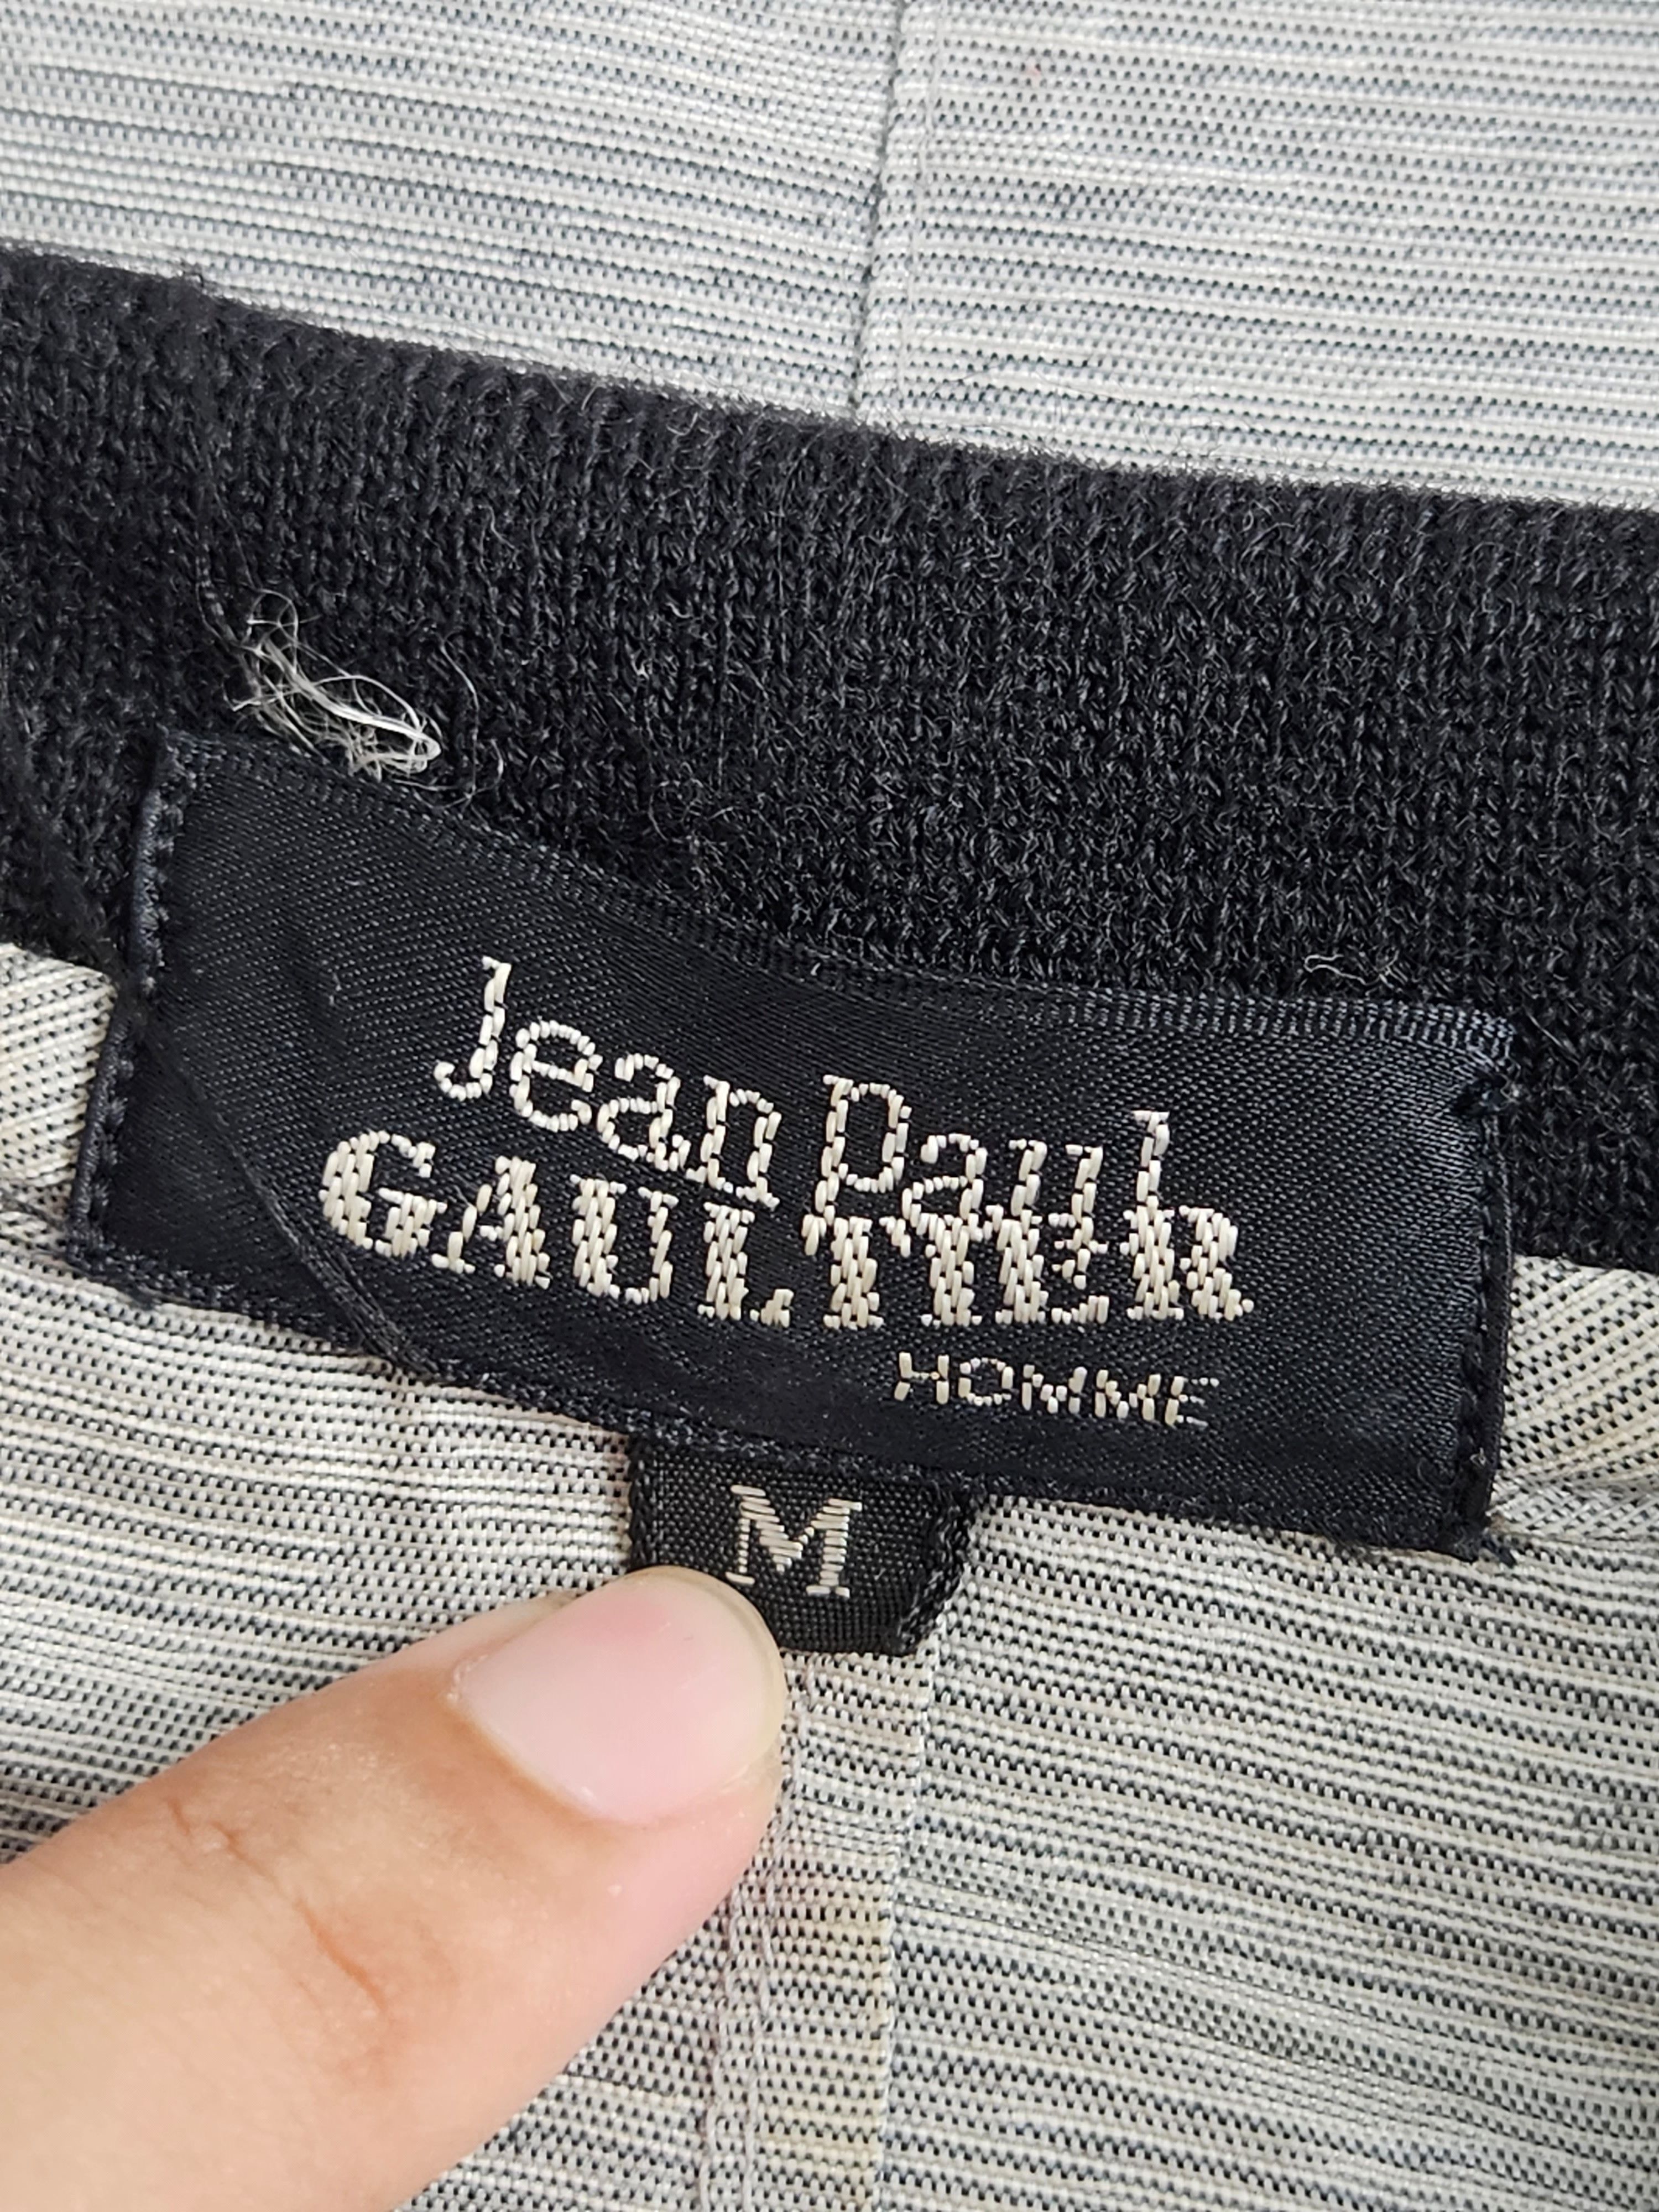 Jean Paul Gaultier JPG Homme Polo Shirt - 4